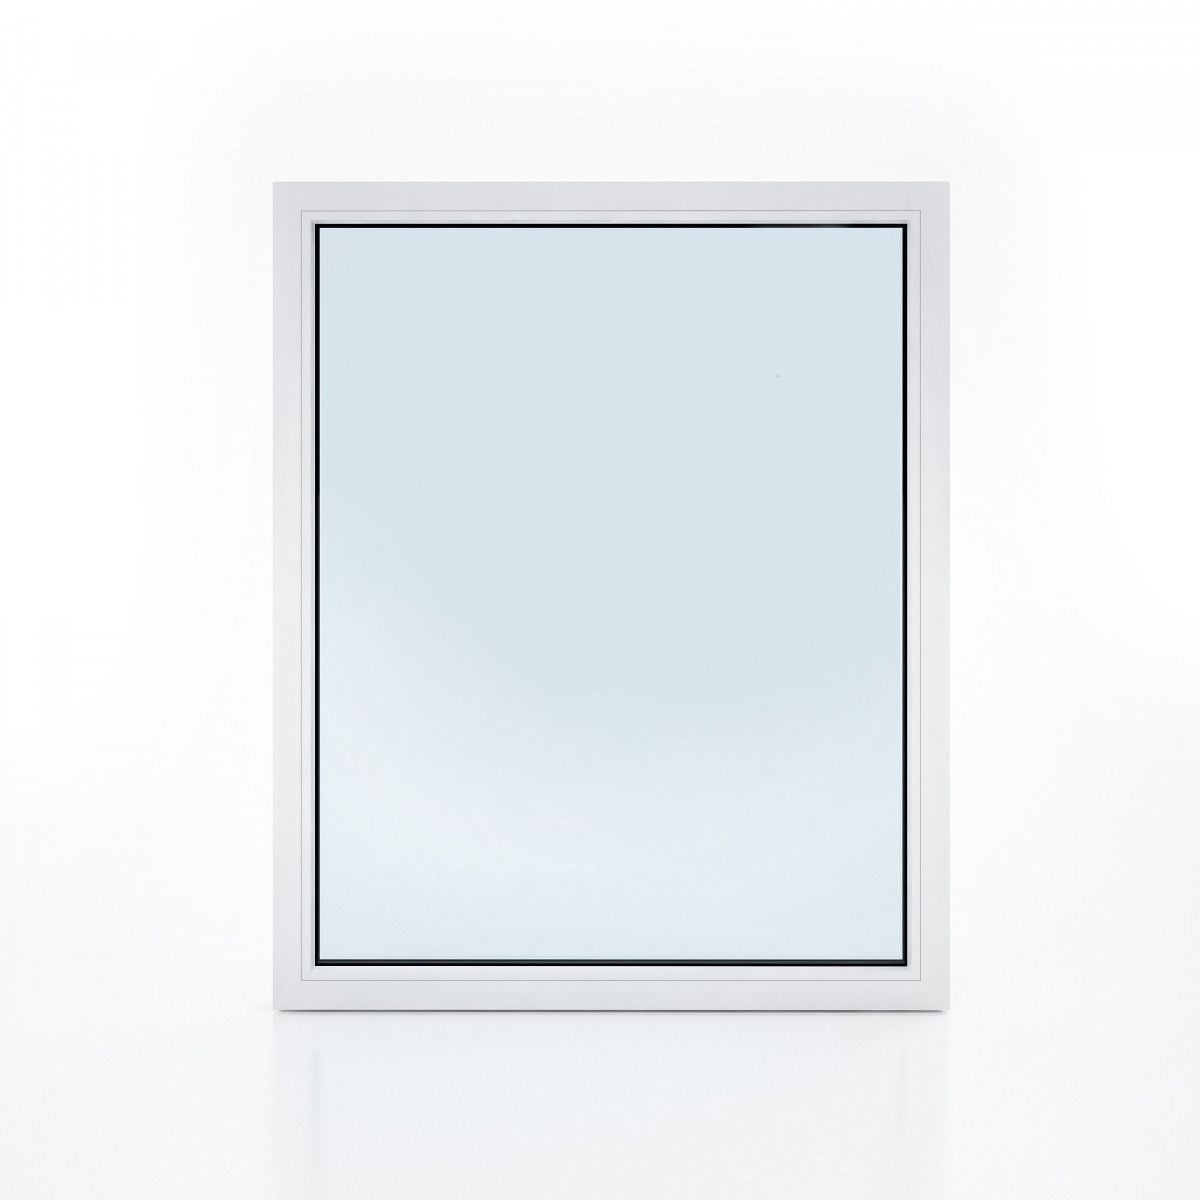 Вікно металопластикове одностулкове глухе (100 см х 100 см), біле